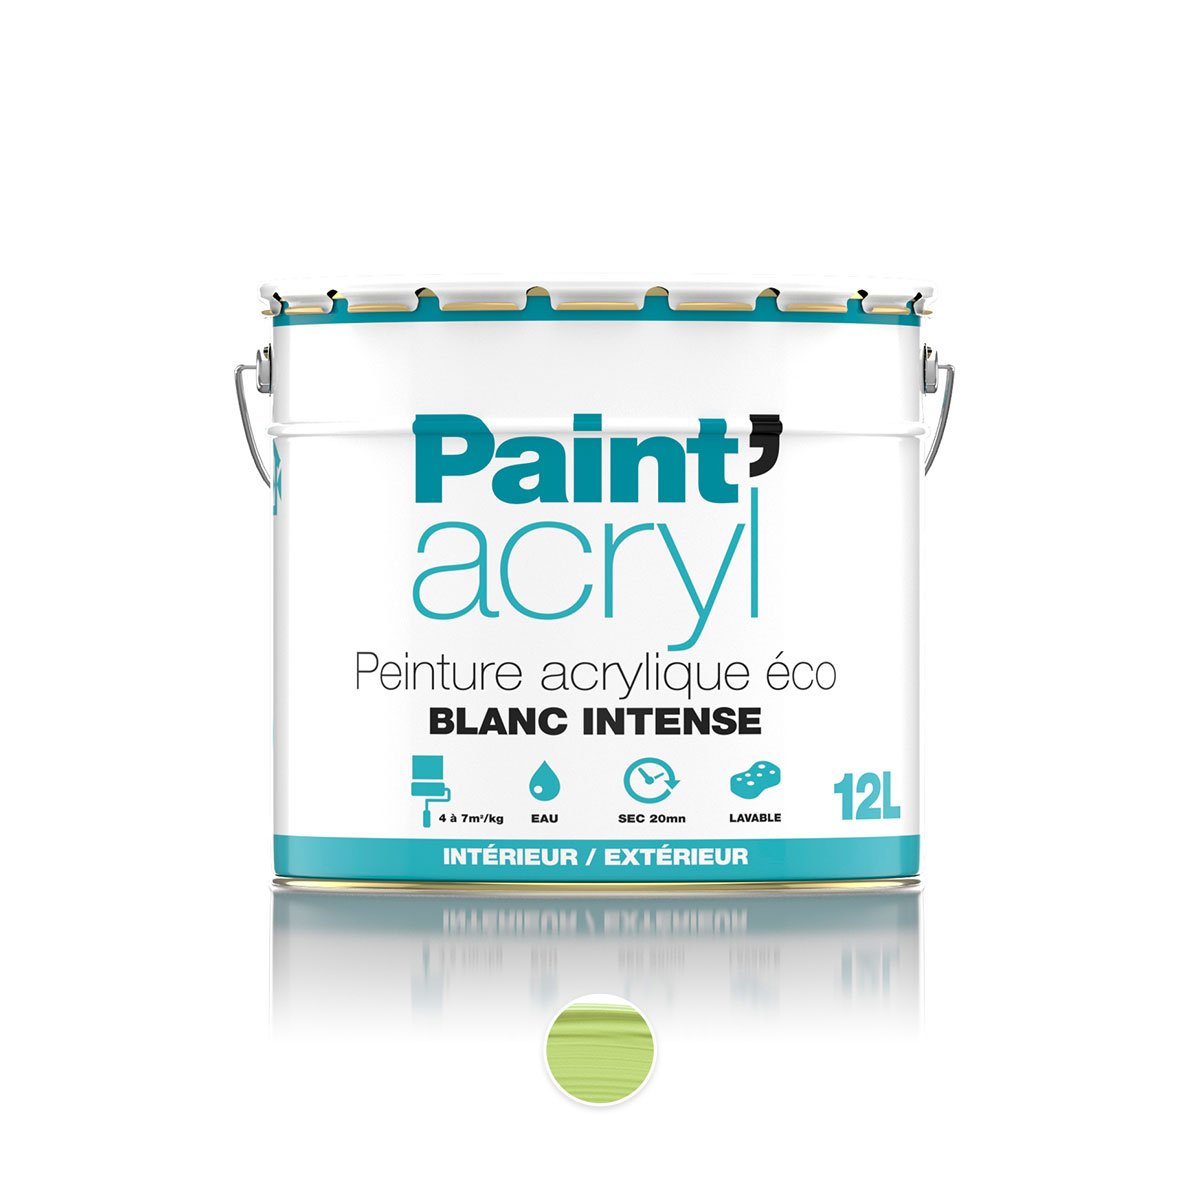 Paint'acryl Peinture acrylique co 12L